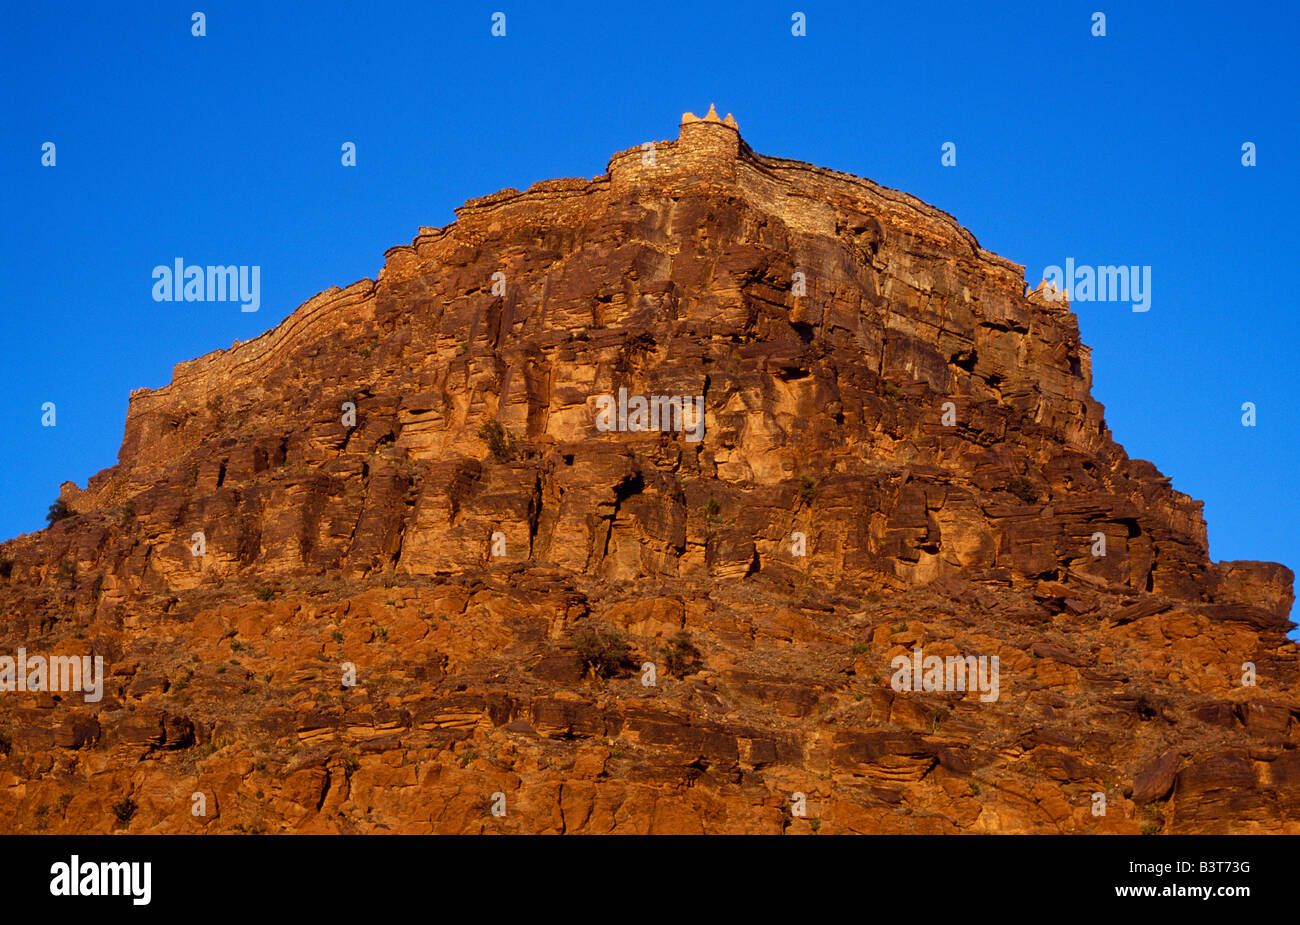 Marokko, Anti-Atlas-Gebirge, die Berber Agadir oder befestigte Getreidespeicher, der Amtoudi ist auf einer steilen Klippe gebaut. Stockfoto